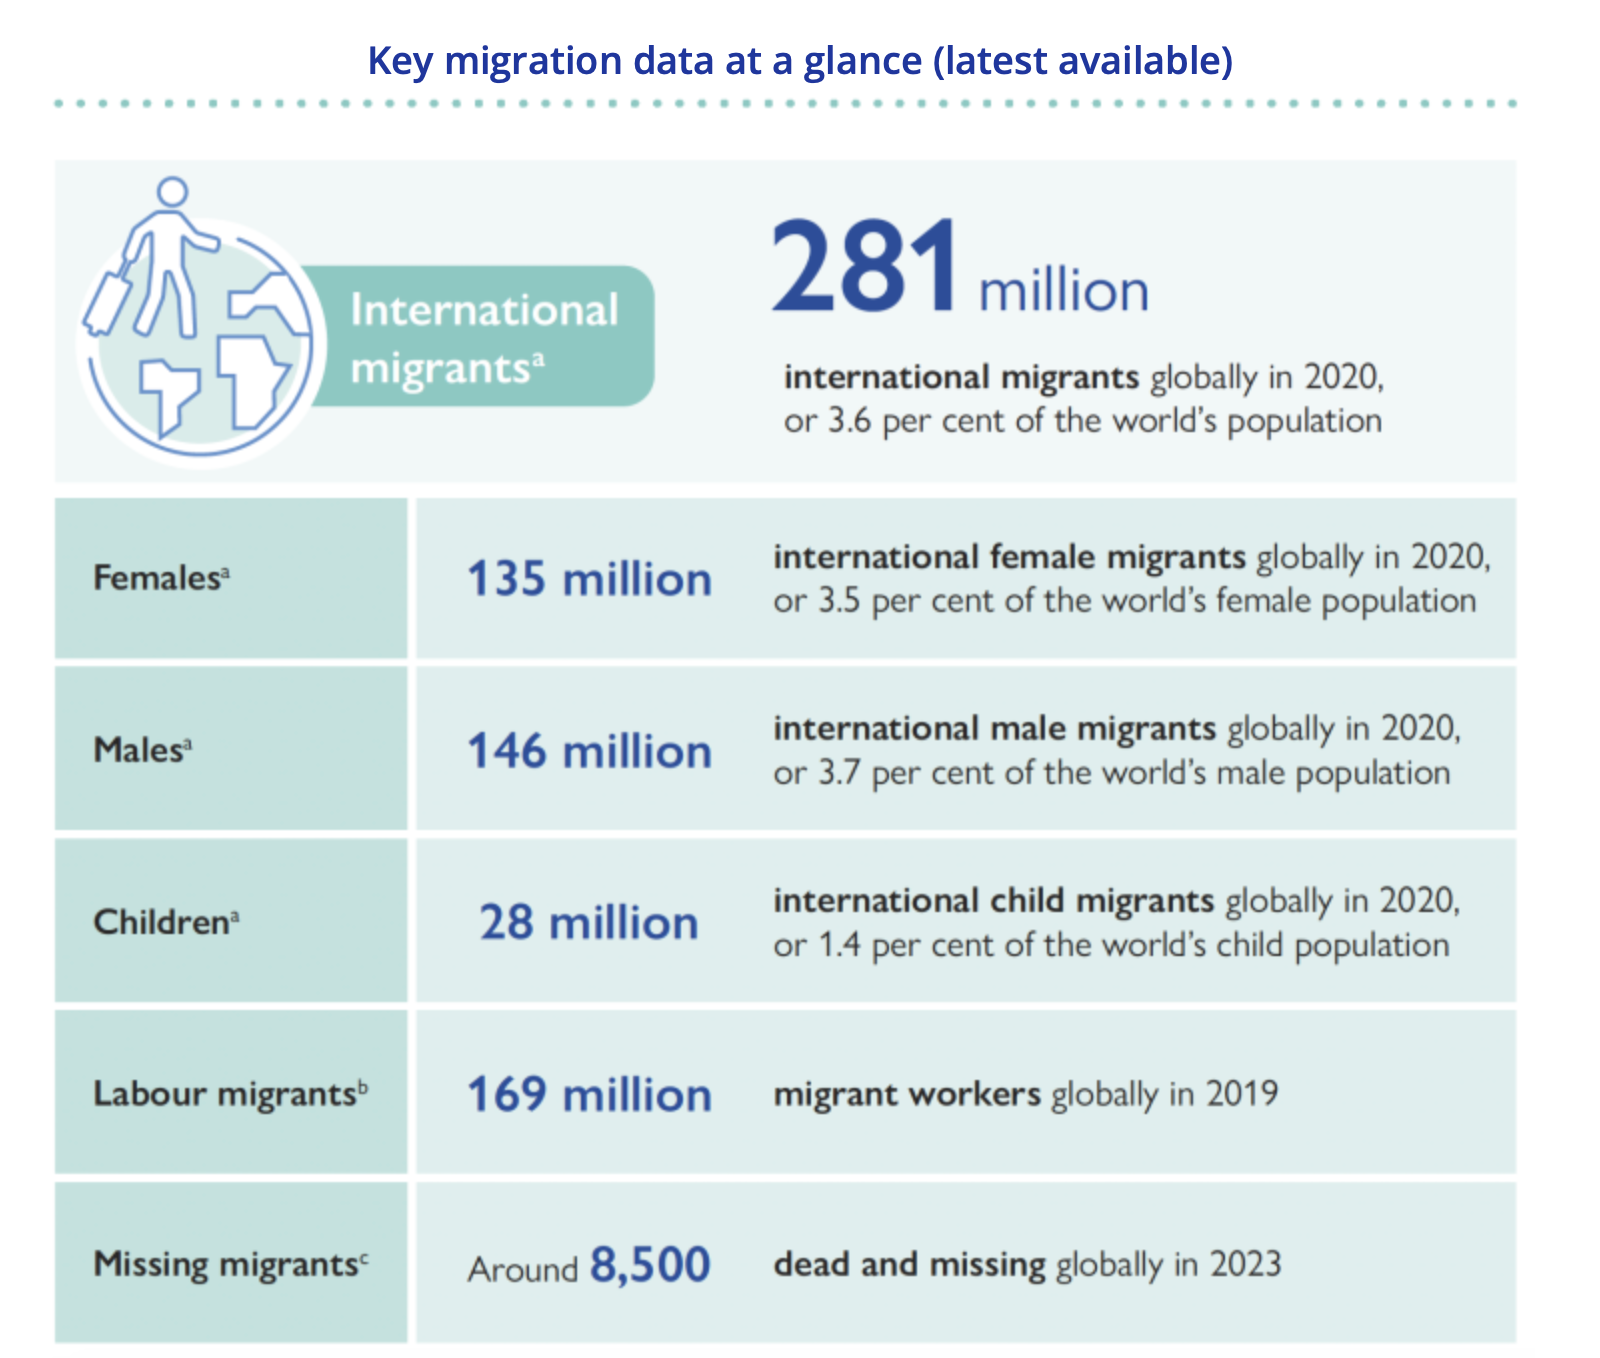 Key migration data 